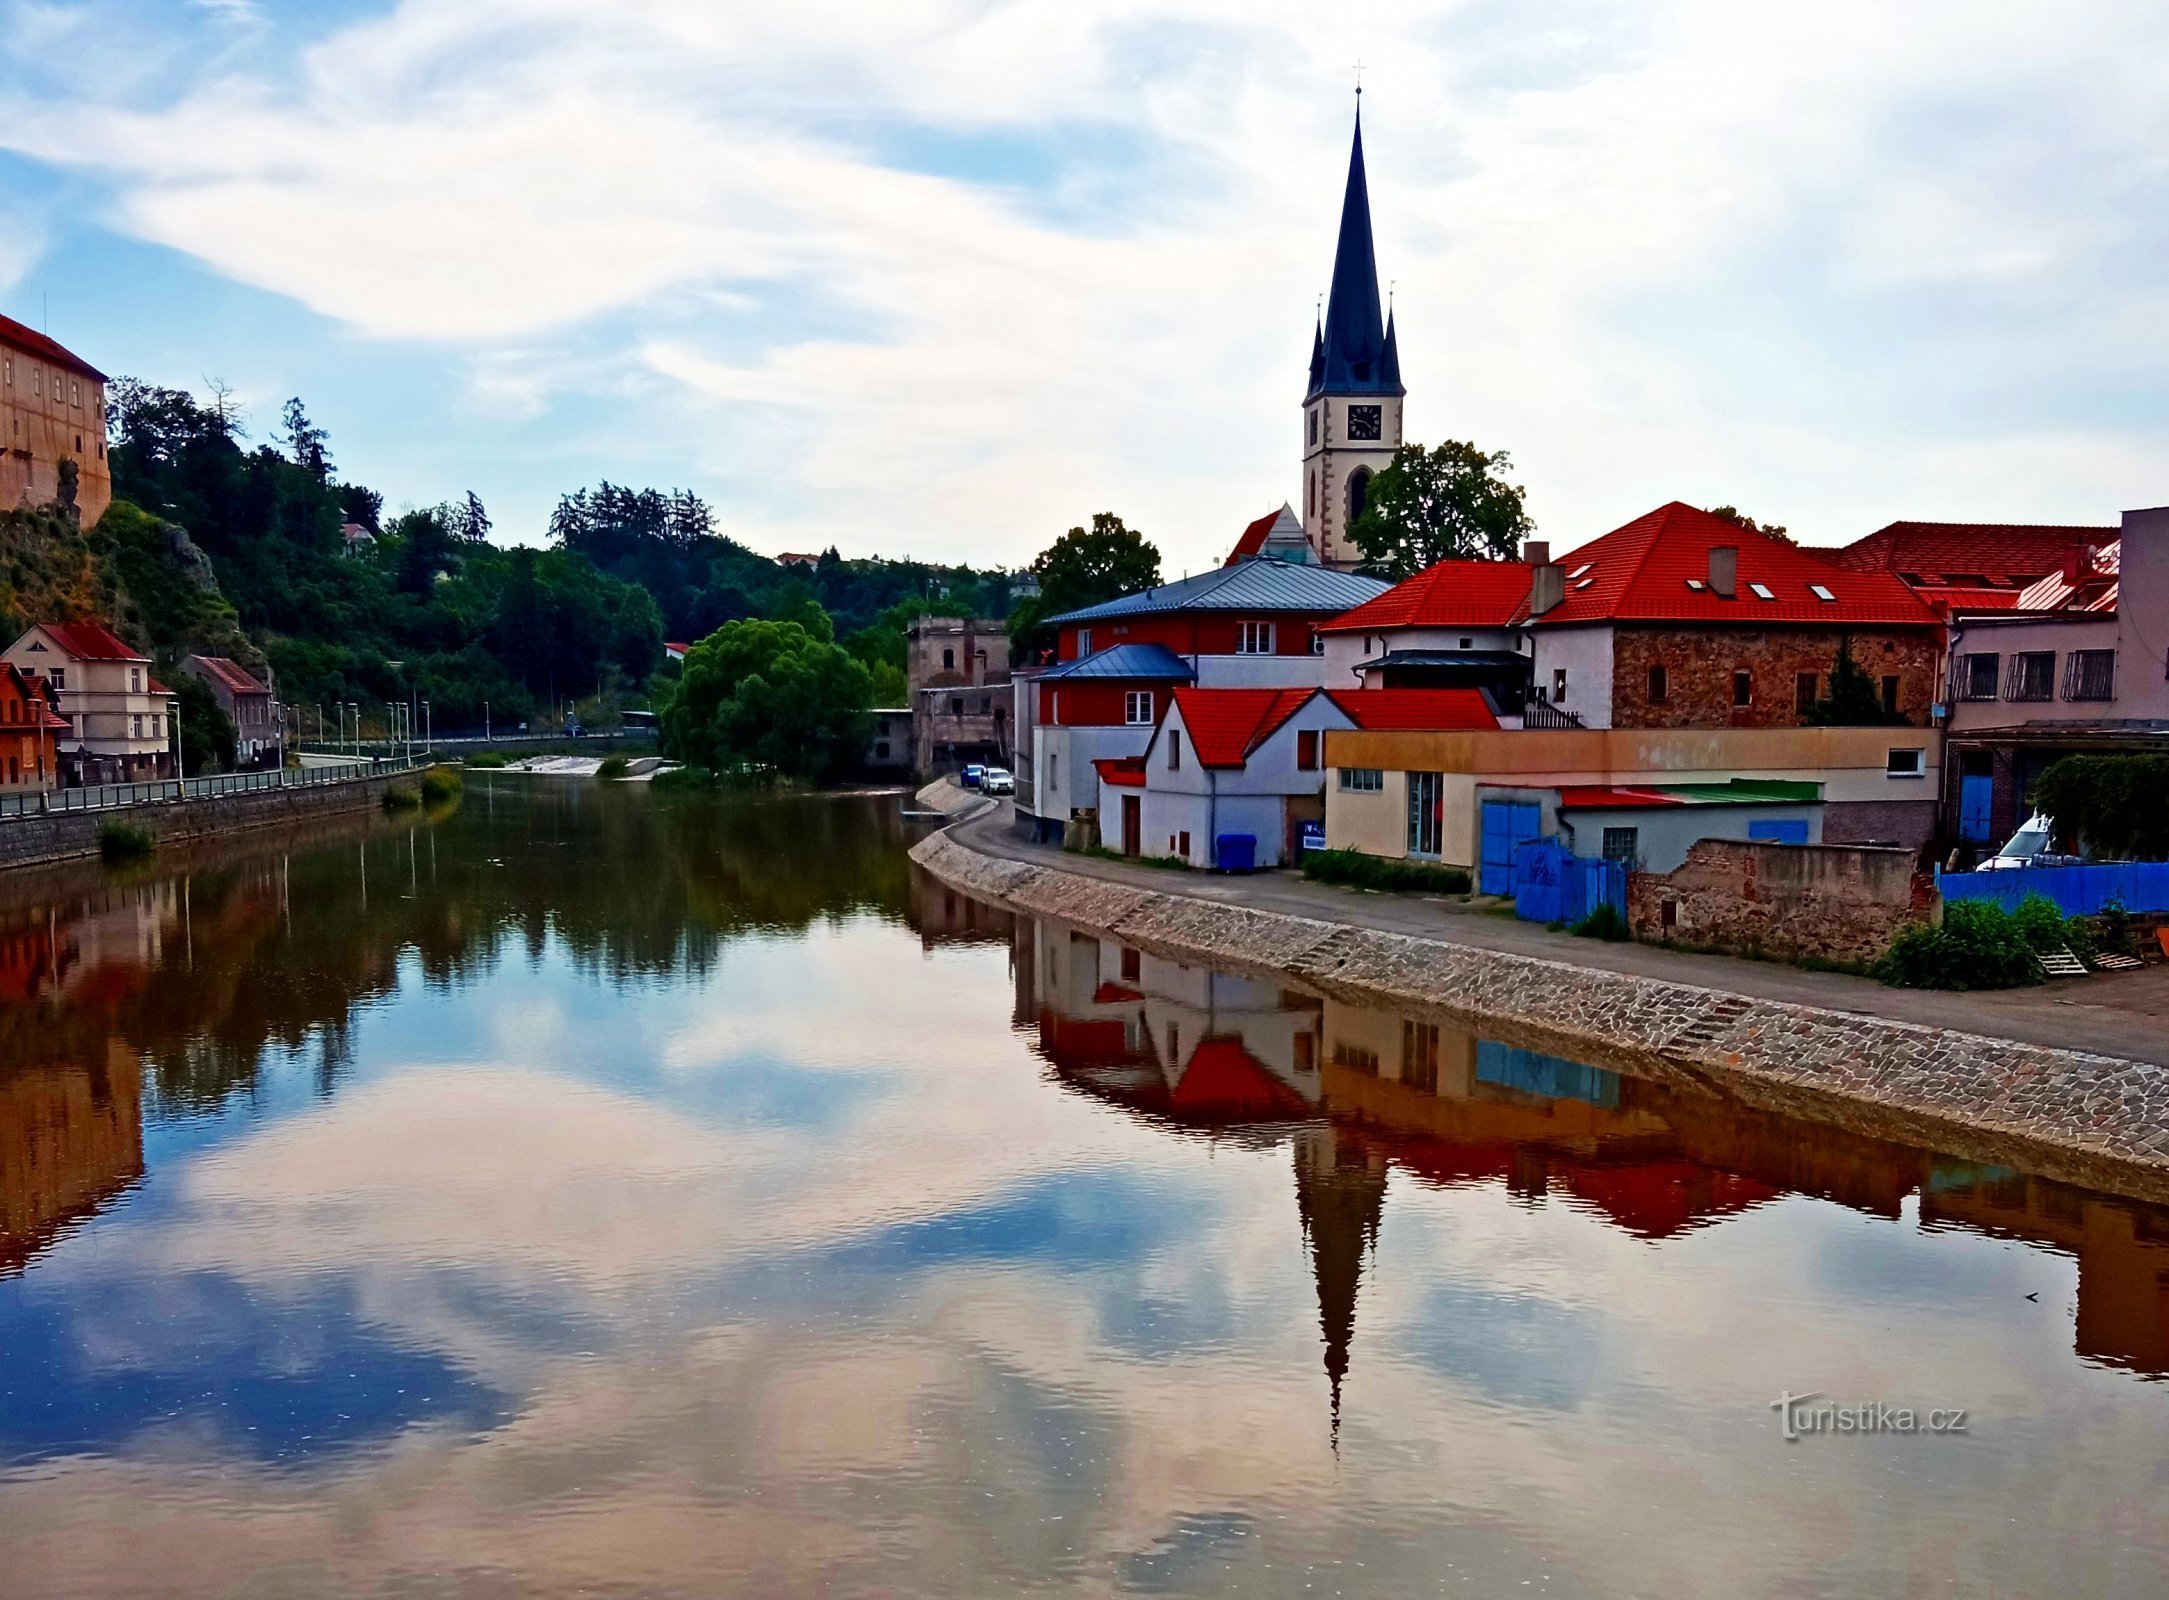 Historiallinen kaupunki - Ledeč nad Sázavou